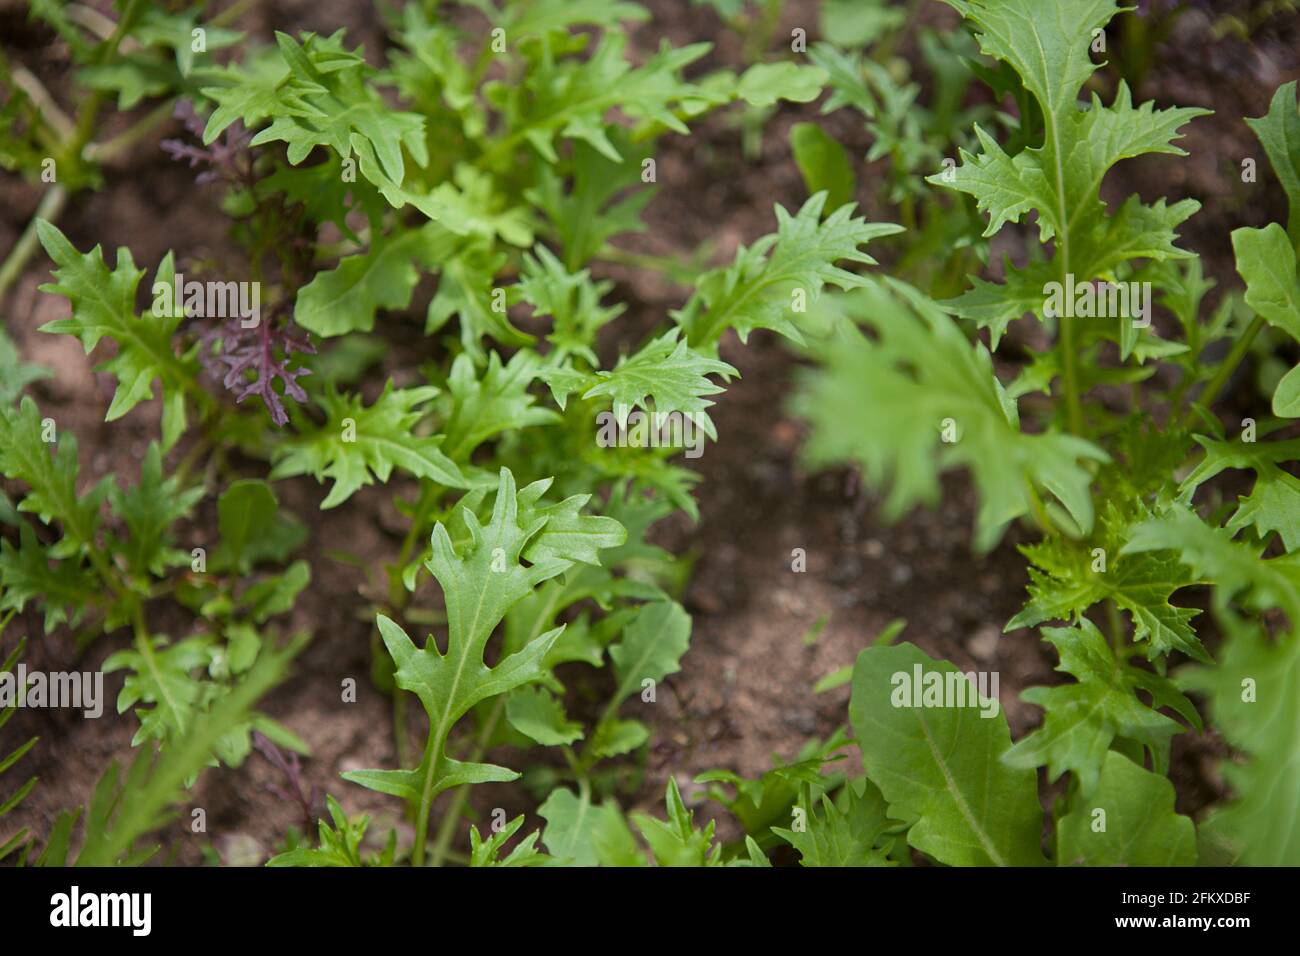 Salatblätter / Blattgemüse, die im Garten im Boden wachsen, meist Rucola (Rucola, Eruca vesicaria) Stockfoto